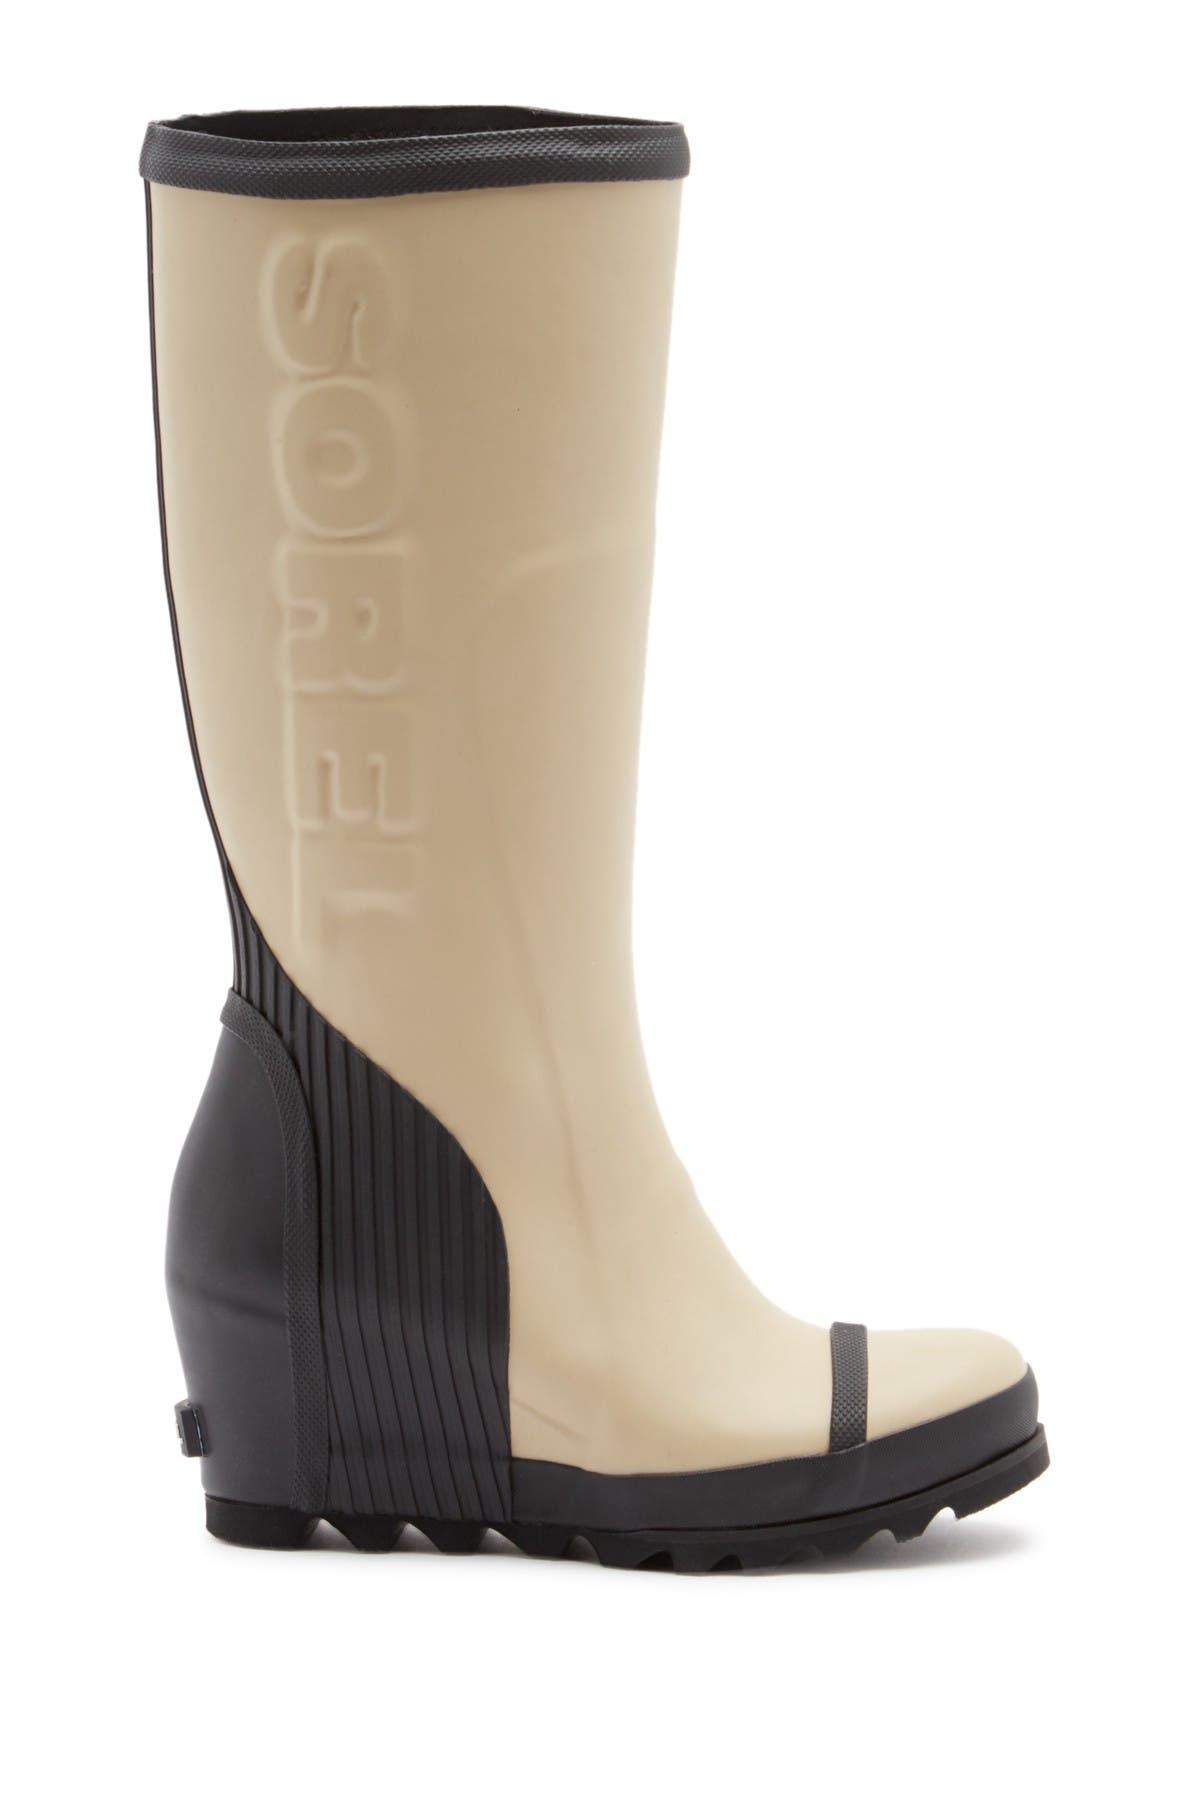 sorel wedge rain boots tall